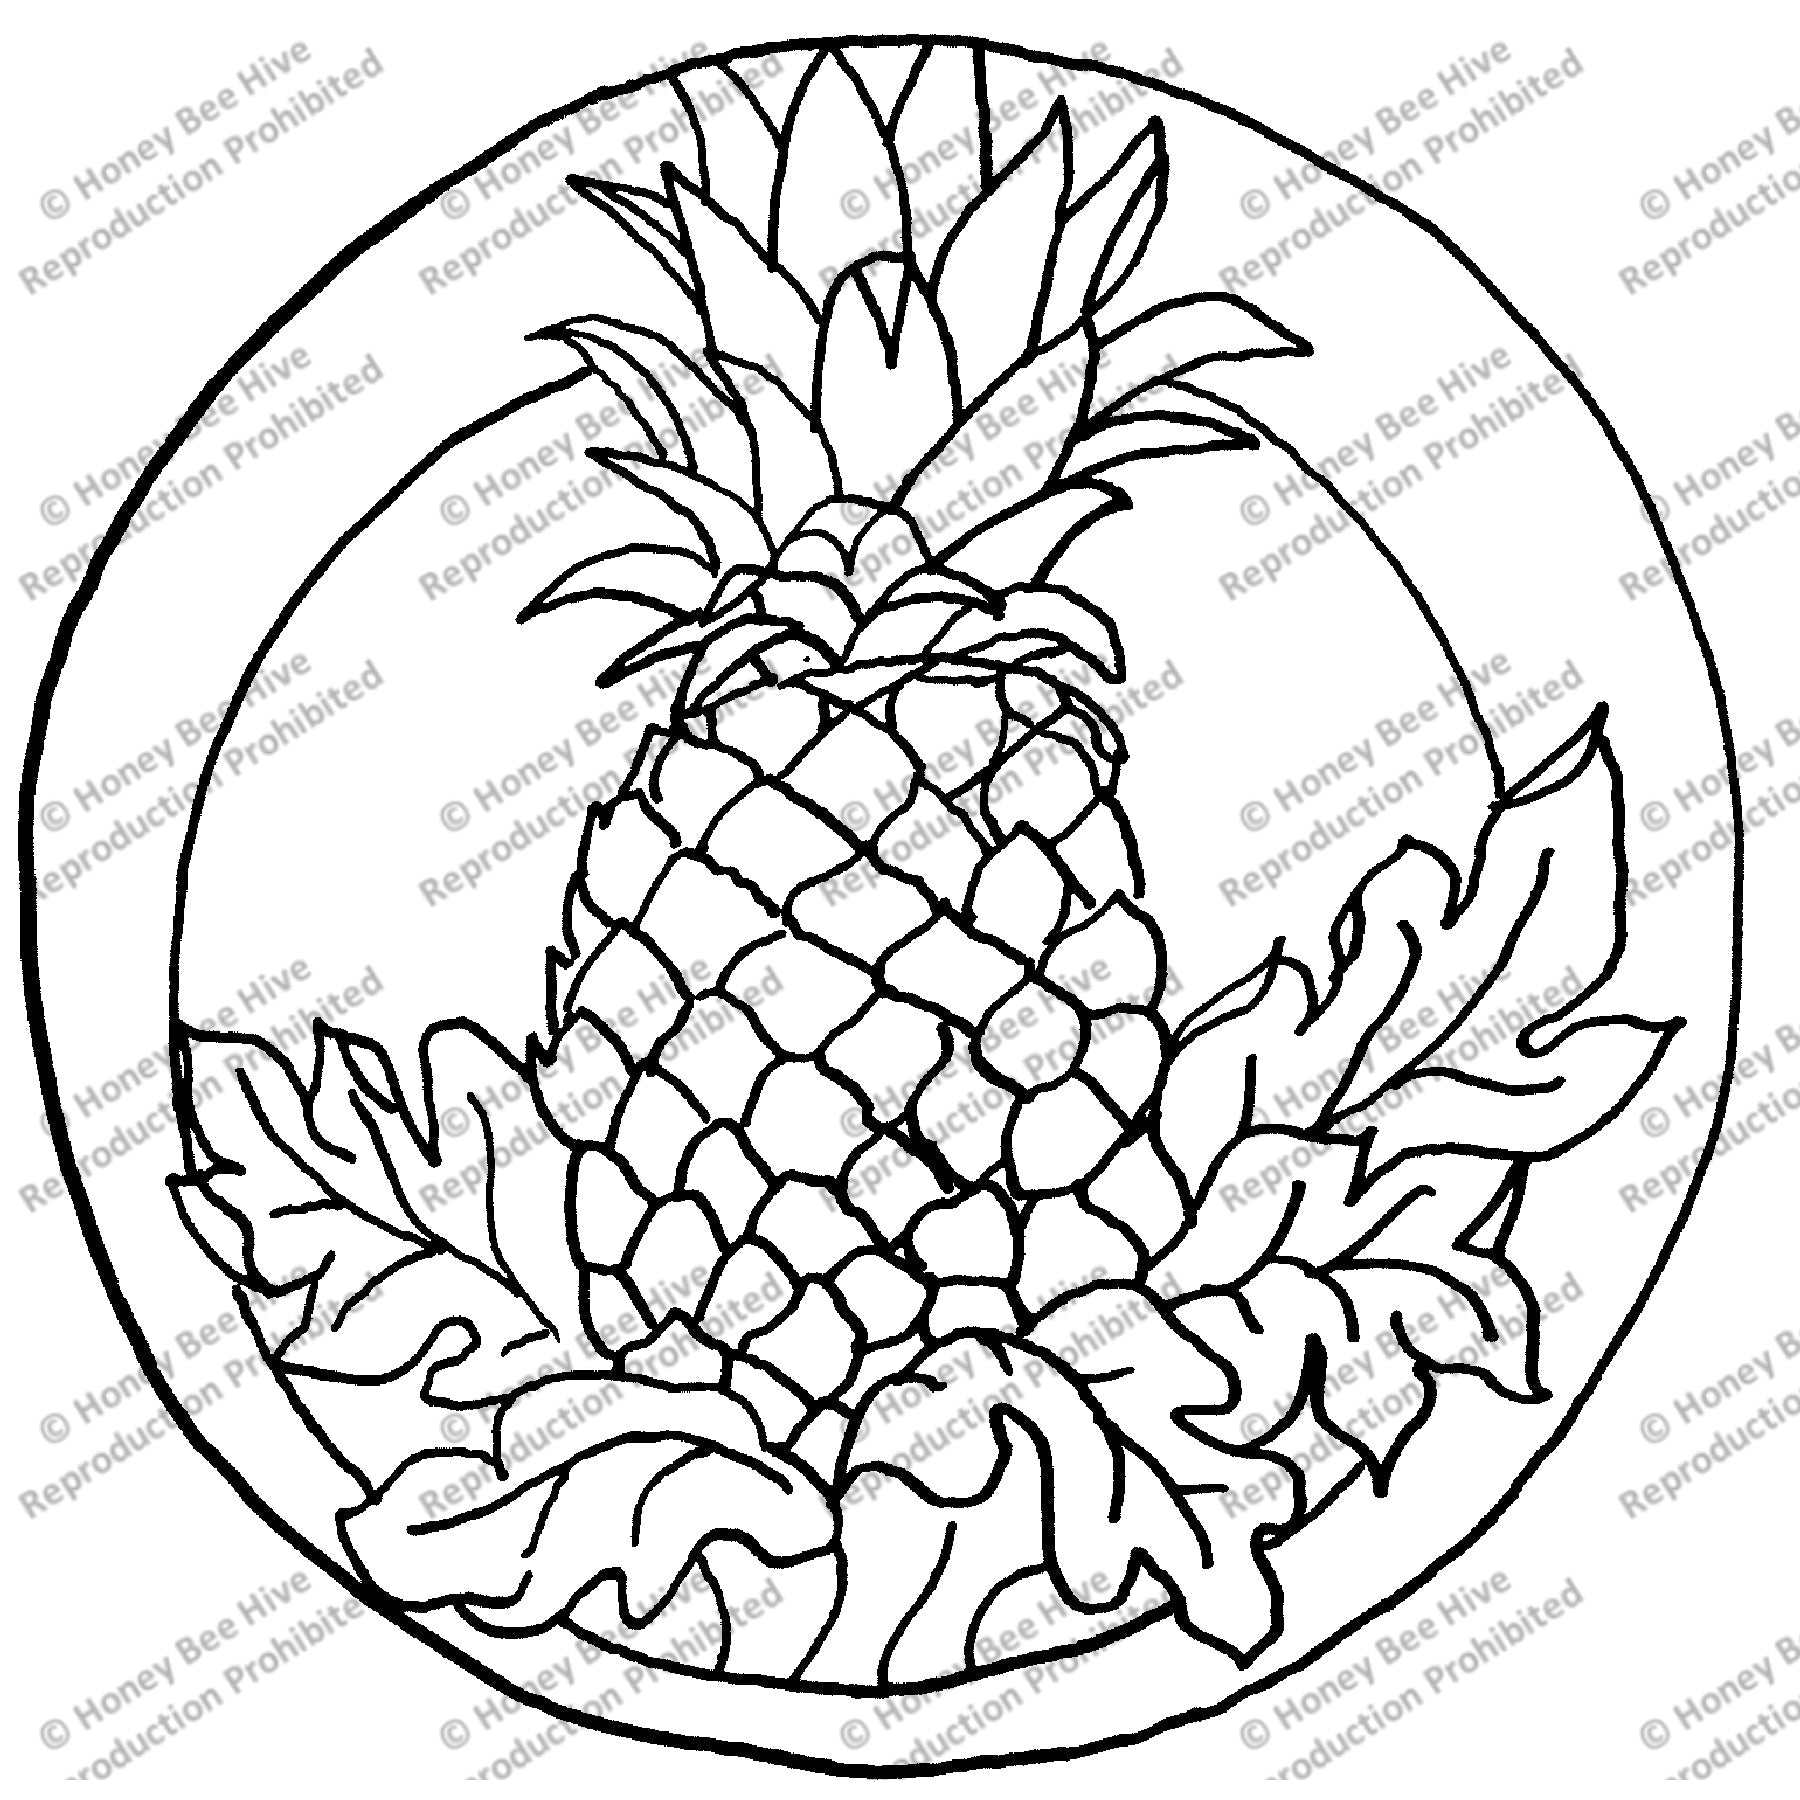 Pineapple, rug hooking pattern